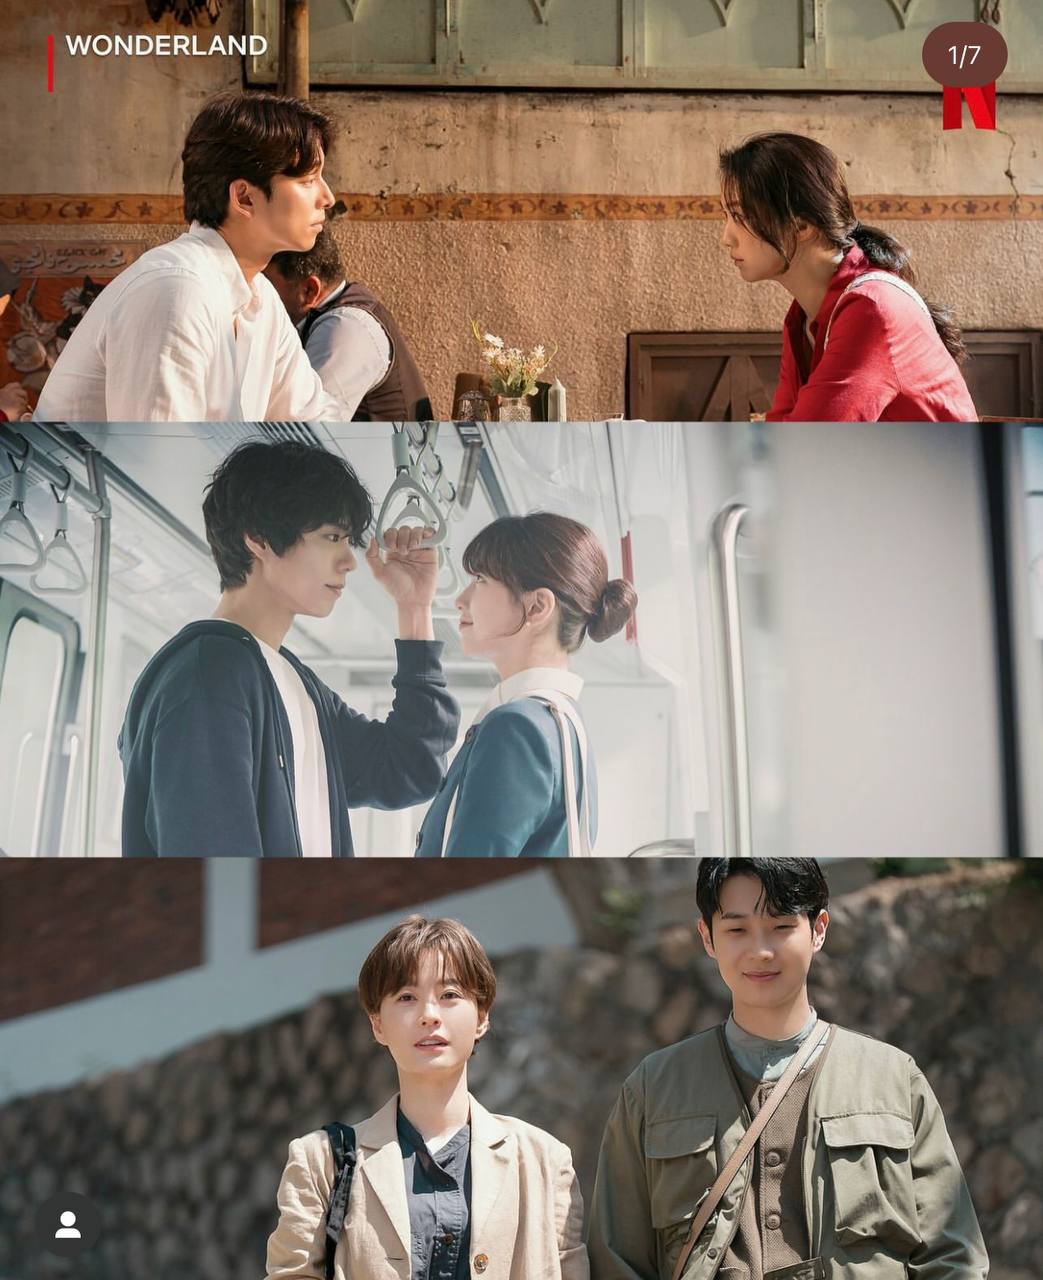 Sinopsis dan Link Nonton Film Korea 'Wonderland' yang Dibintangi Bae Suzy dan Park Bo Gum, Cek Yuk!